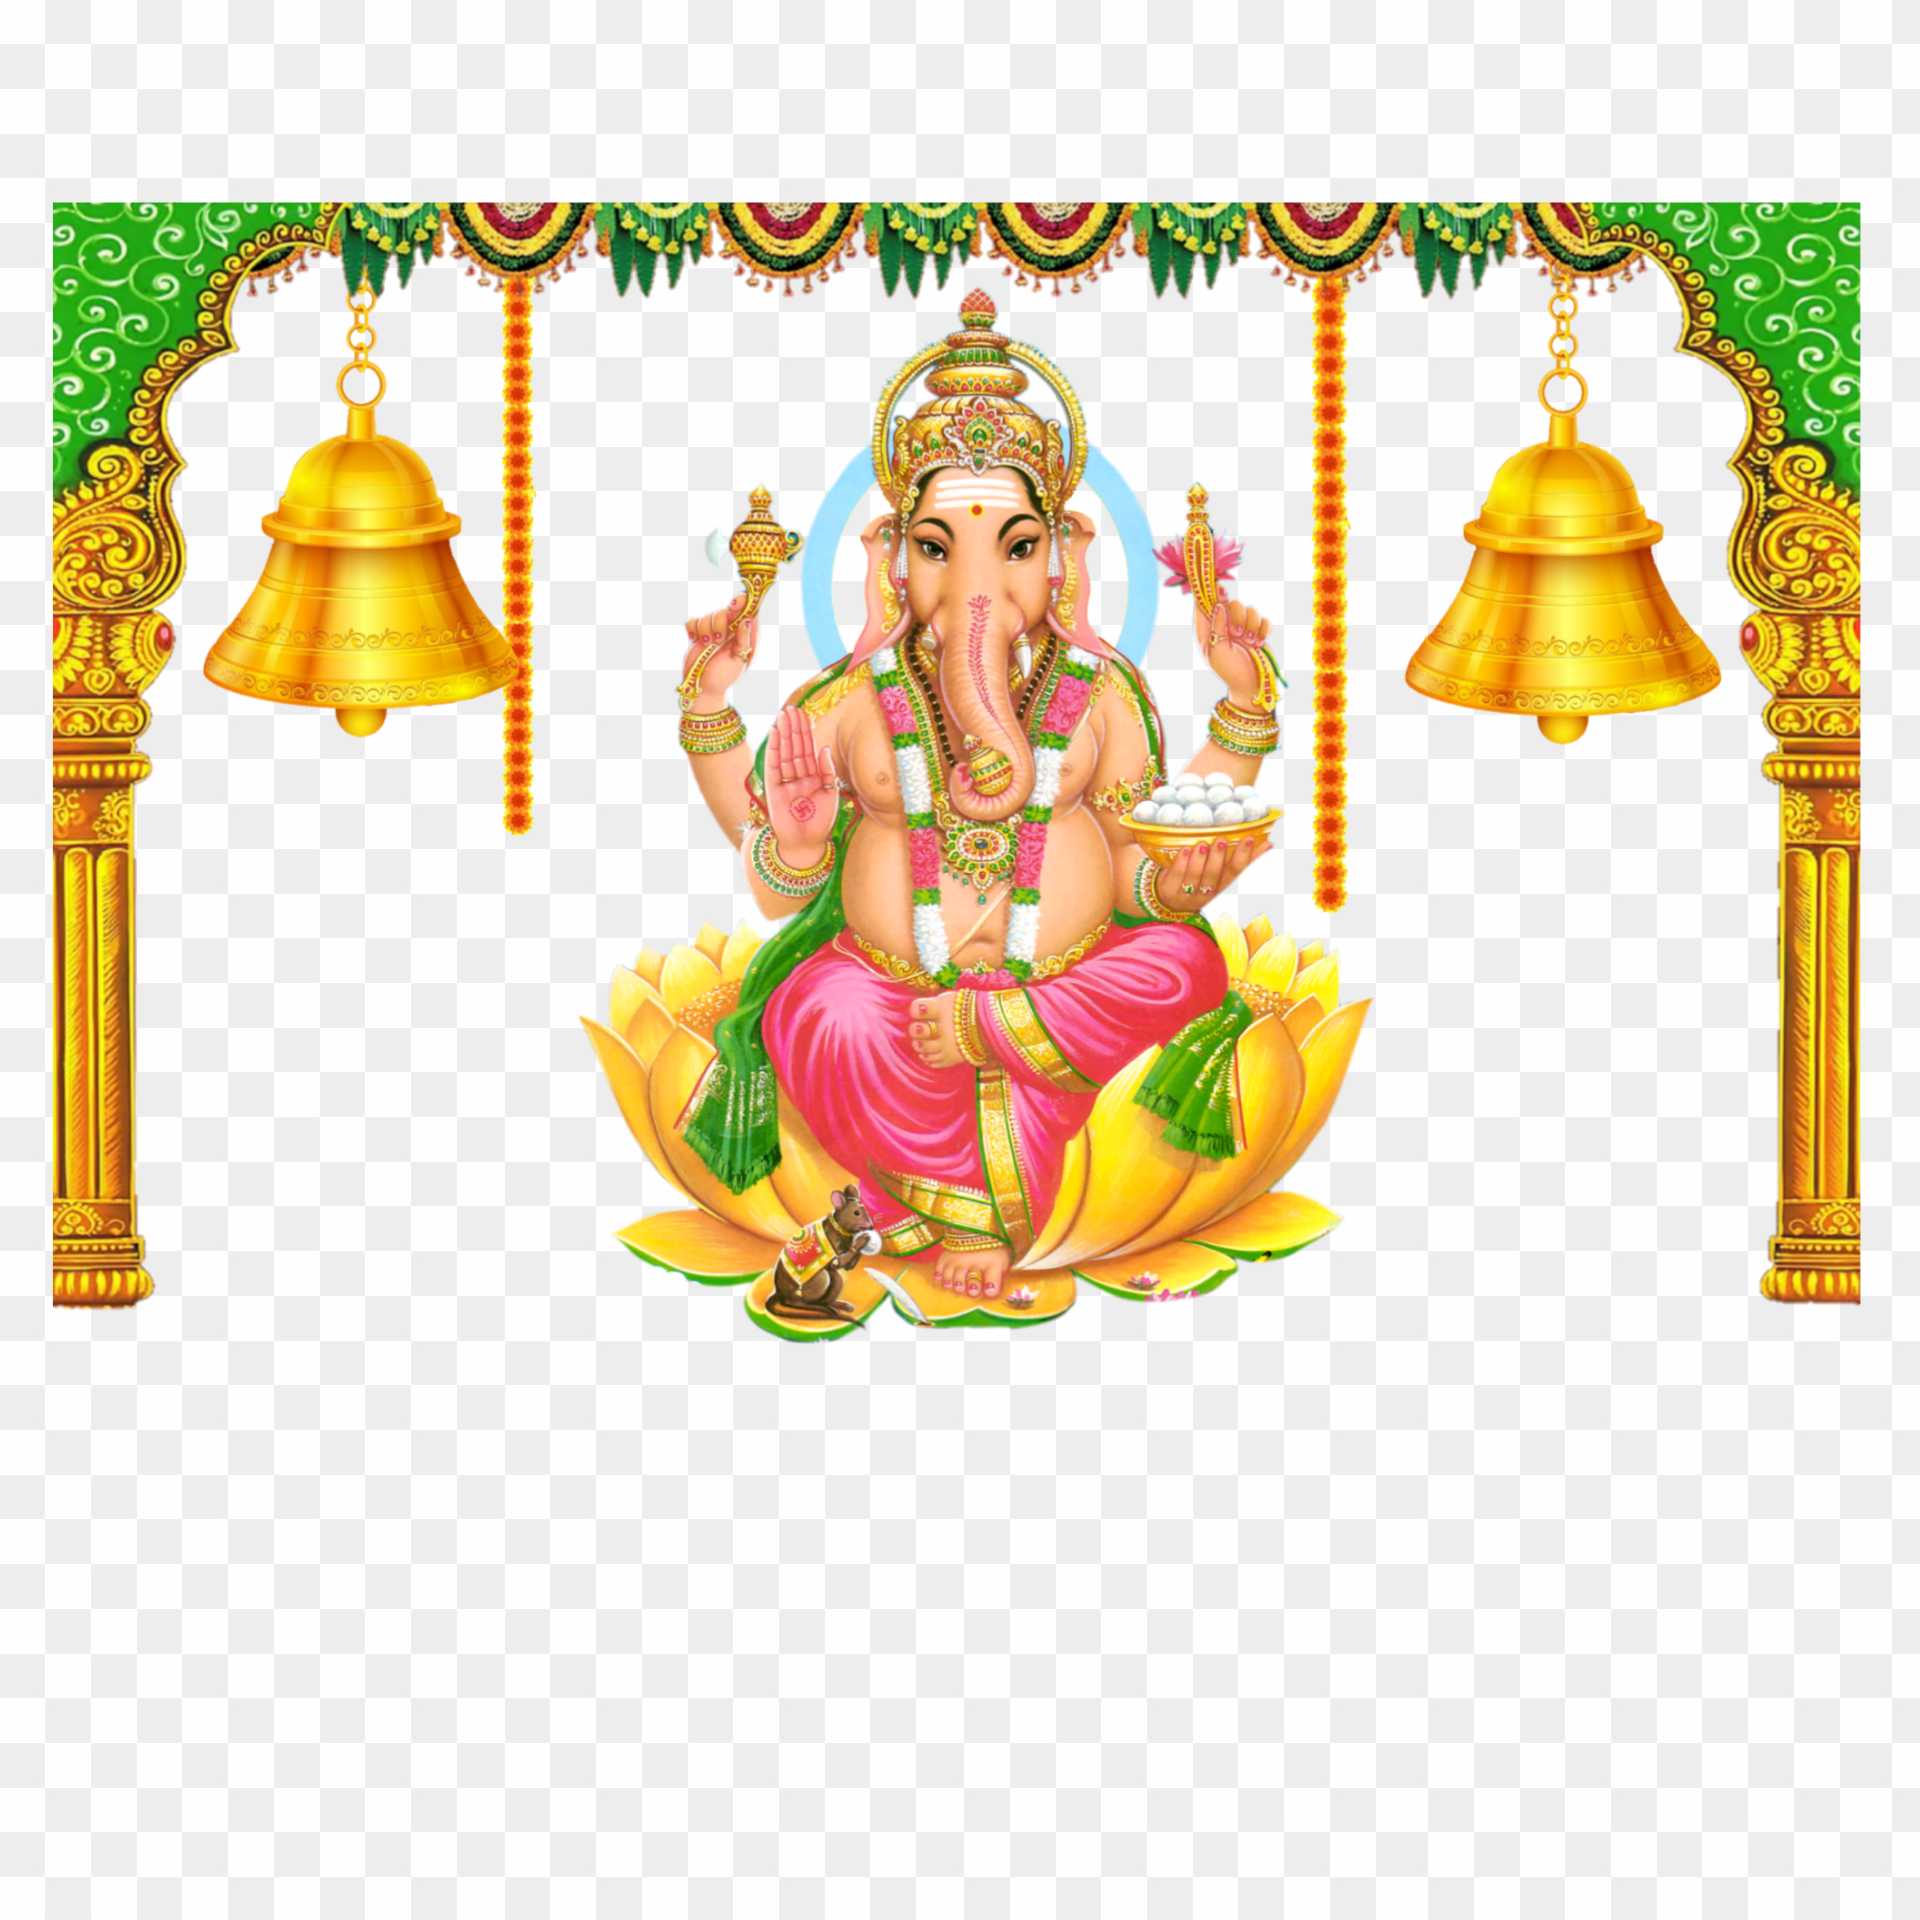 Ganesh Ganpati Bappa HD PNG transparent images download